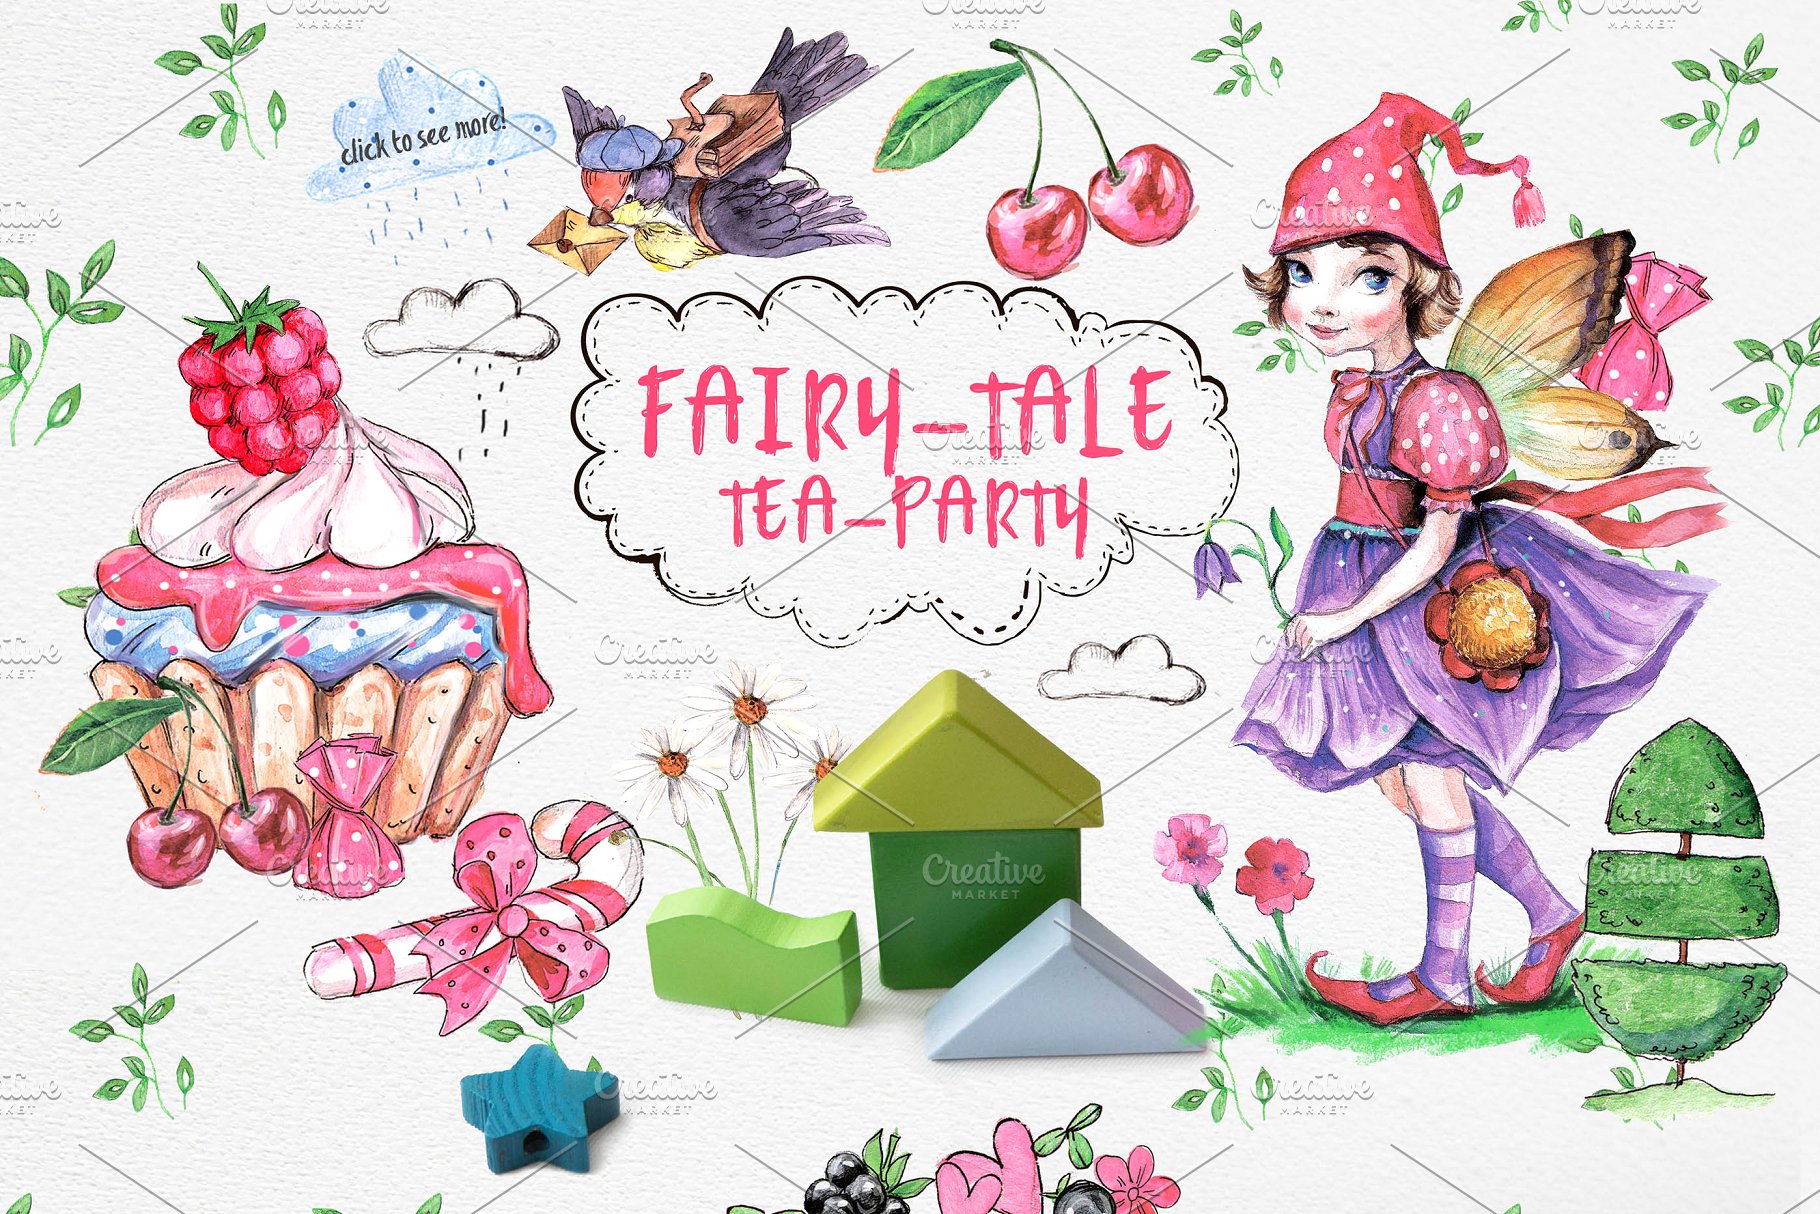 超级可爱儿童主题设计素材合集[2.24GB] FAIRY-TALE LAND插图(8)